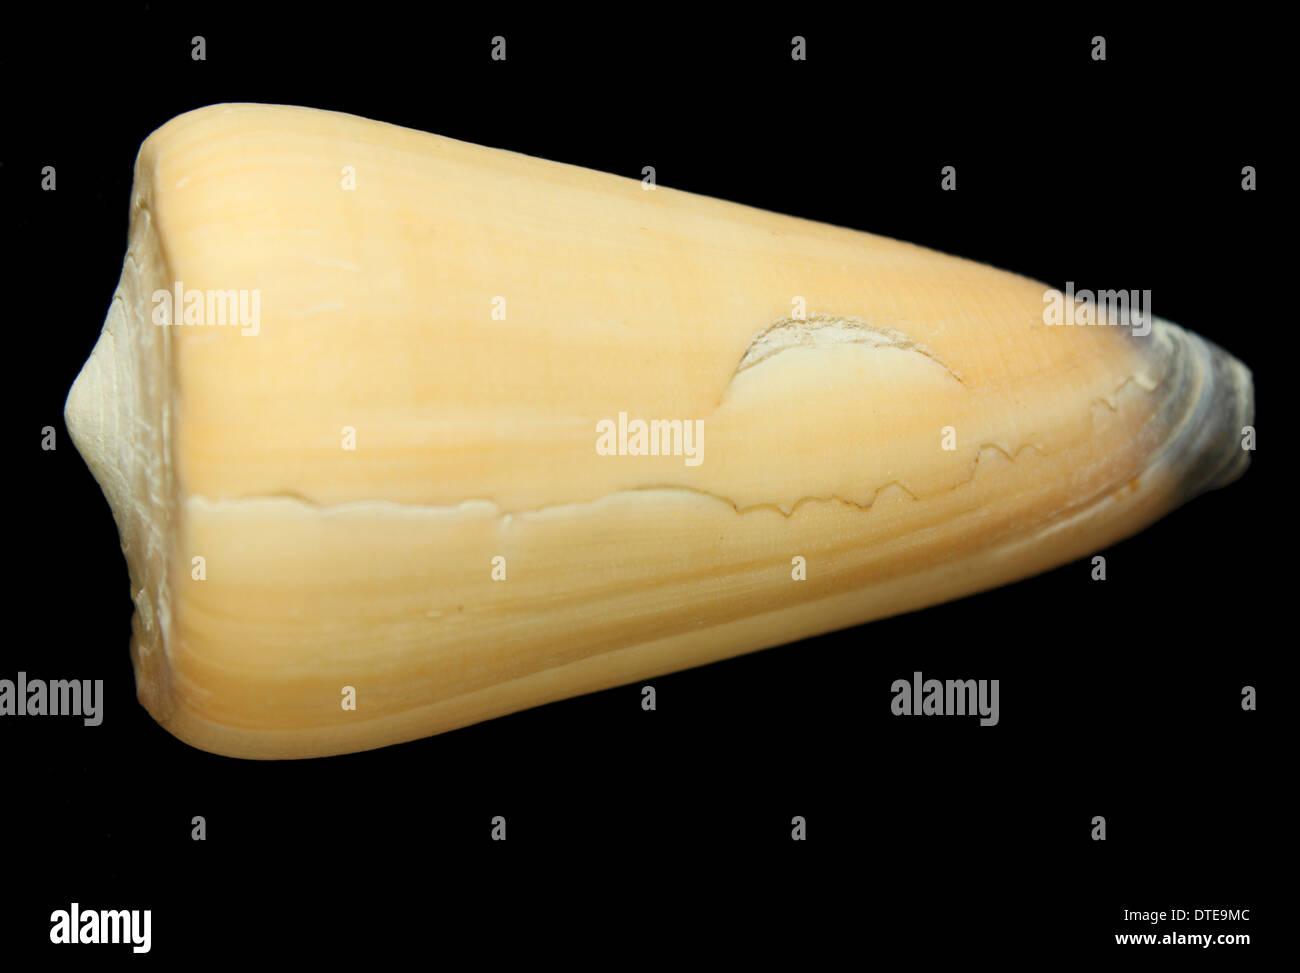 Conus spiceri shell Stock Photo